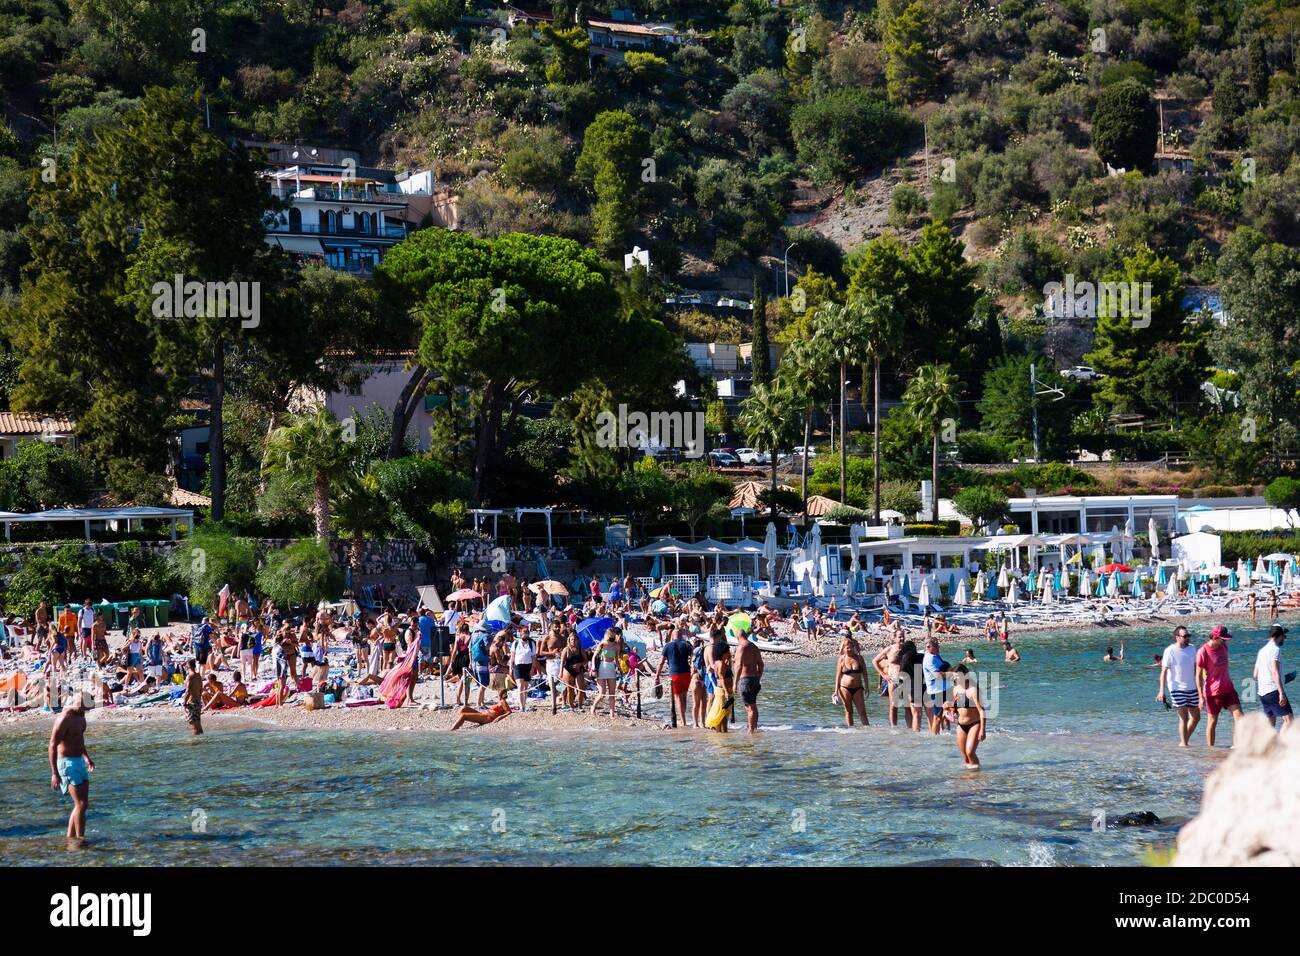 Sicilia, Italia. I turisti si sfilano attraverso acque poco profonde per raggiungere l'attrazione turistica Isola Bella vicino alla città siciliana di Taormina. Foto Stock